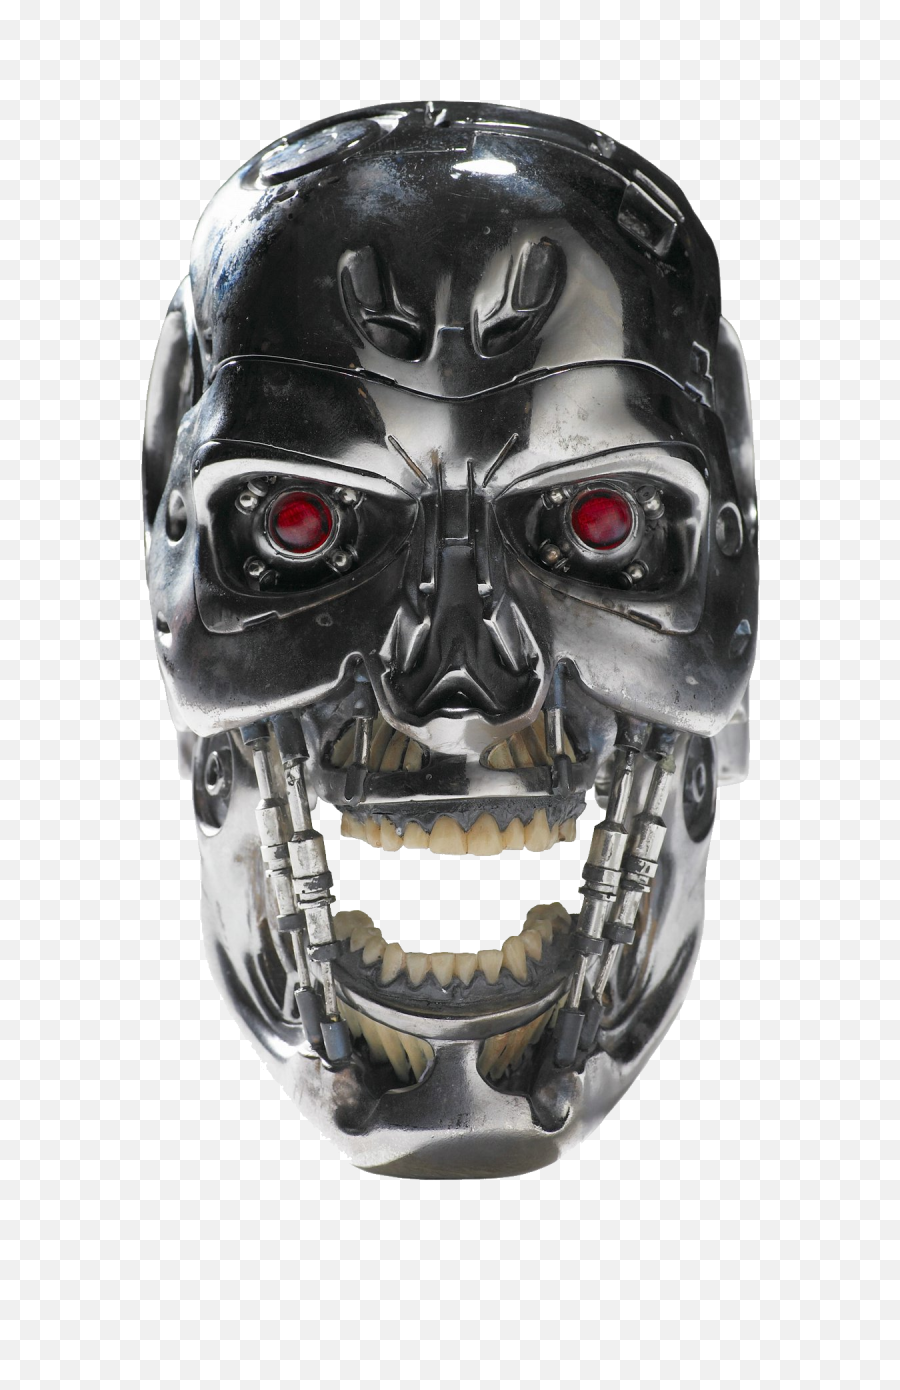 Robot Face Terminator Png - T900 Terminator Sarah Connor Chronicles,Terminator Face Png